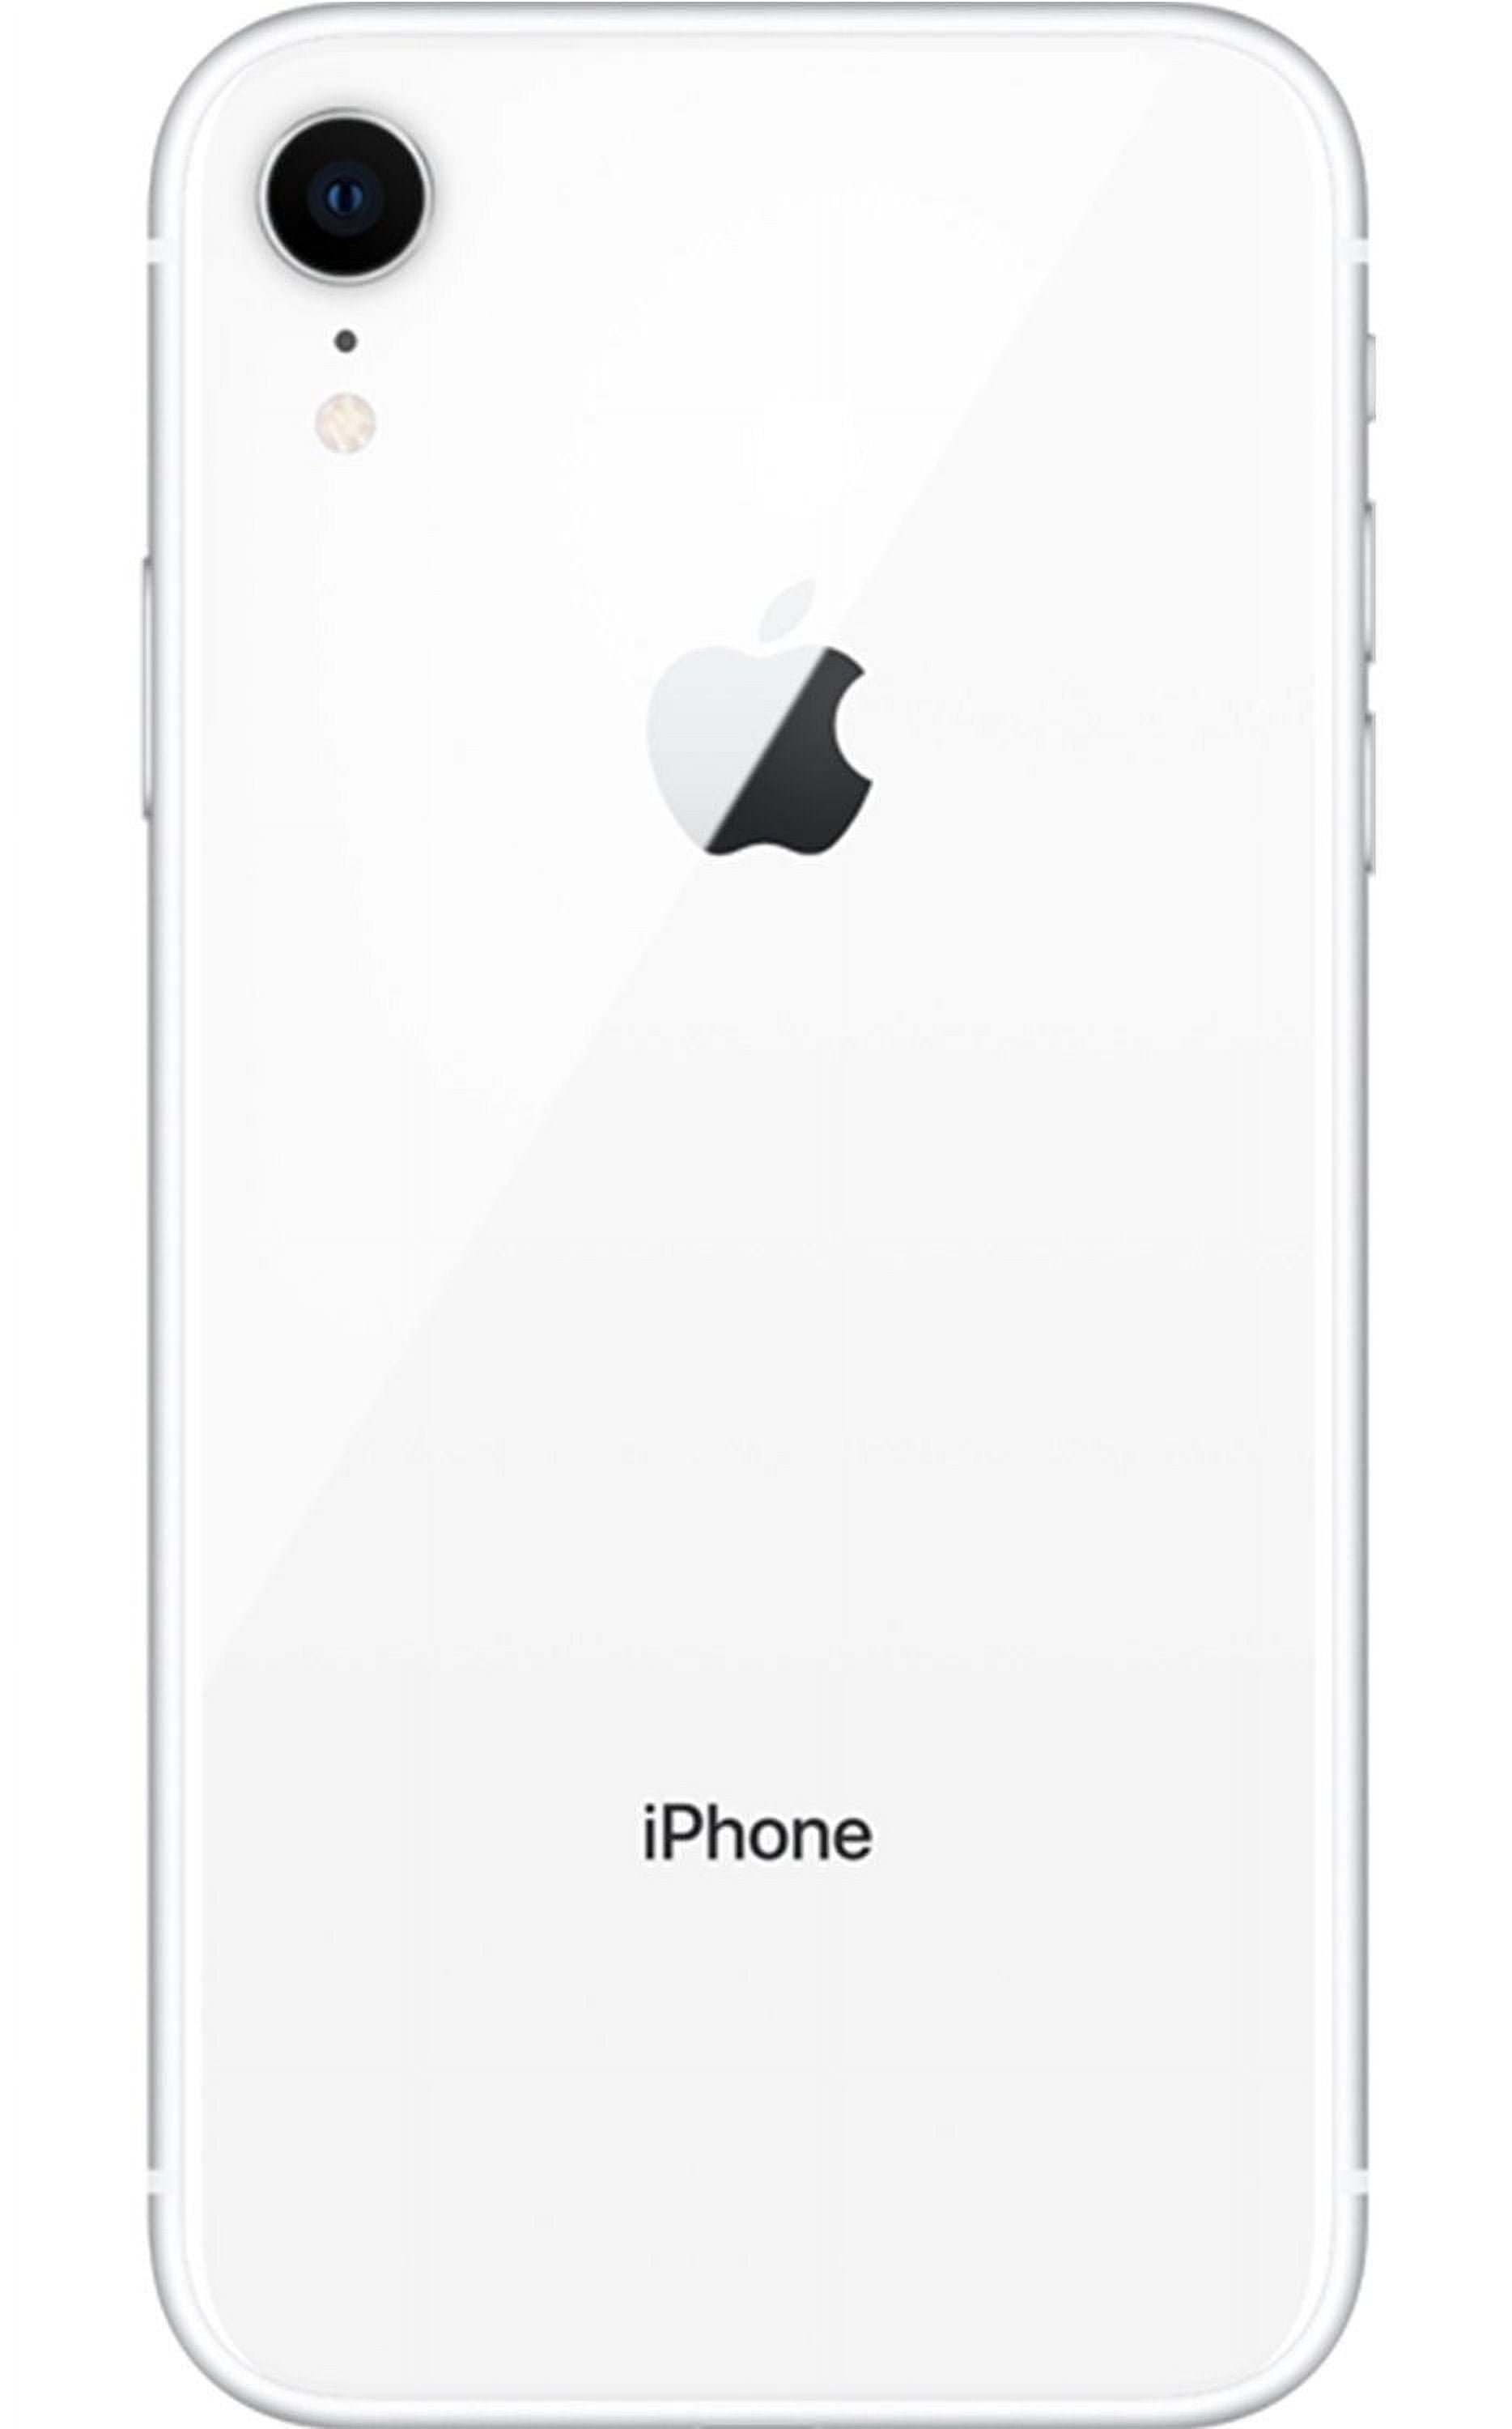 Smartphone APPLE iPhone XR Bleu 64 Go Reconditionné